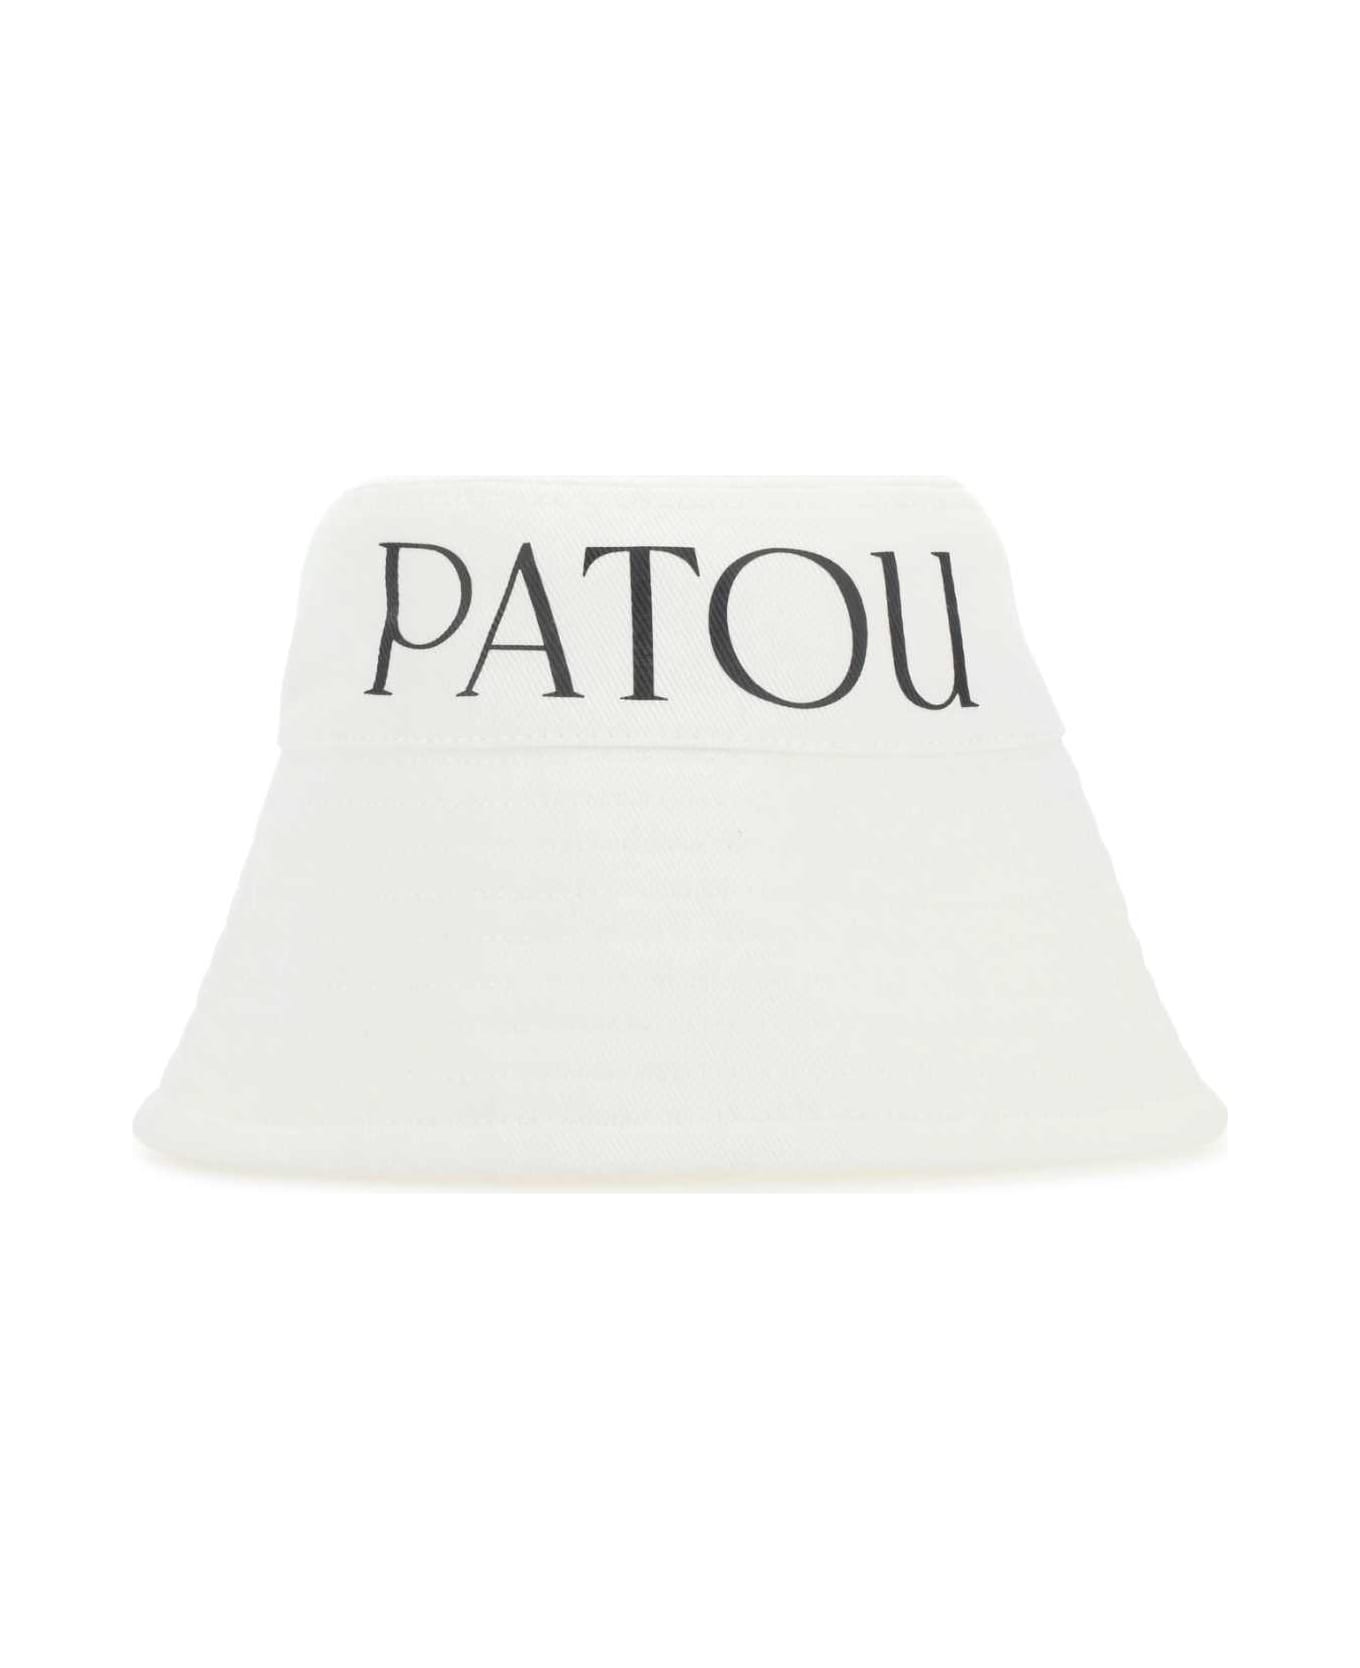 Patou White Canvas Hat - 001W